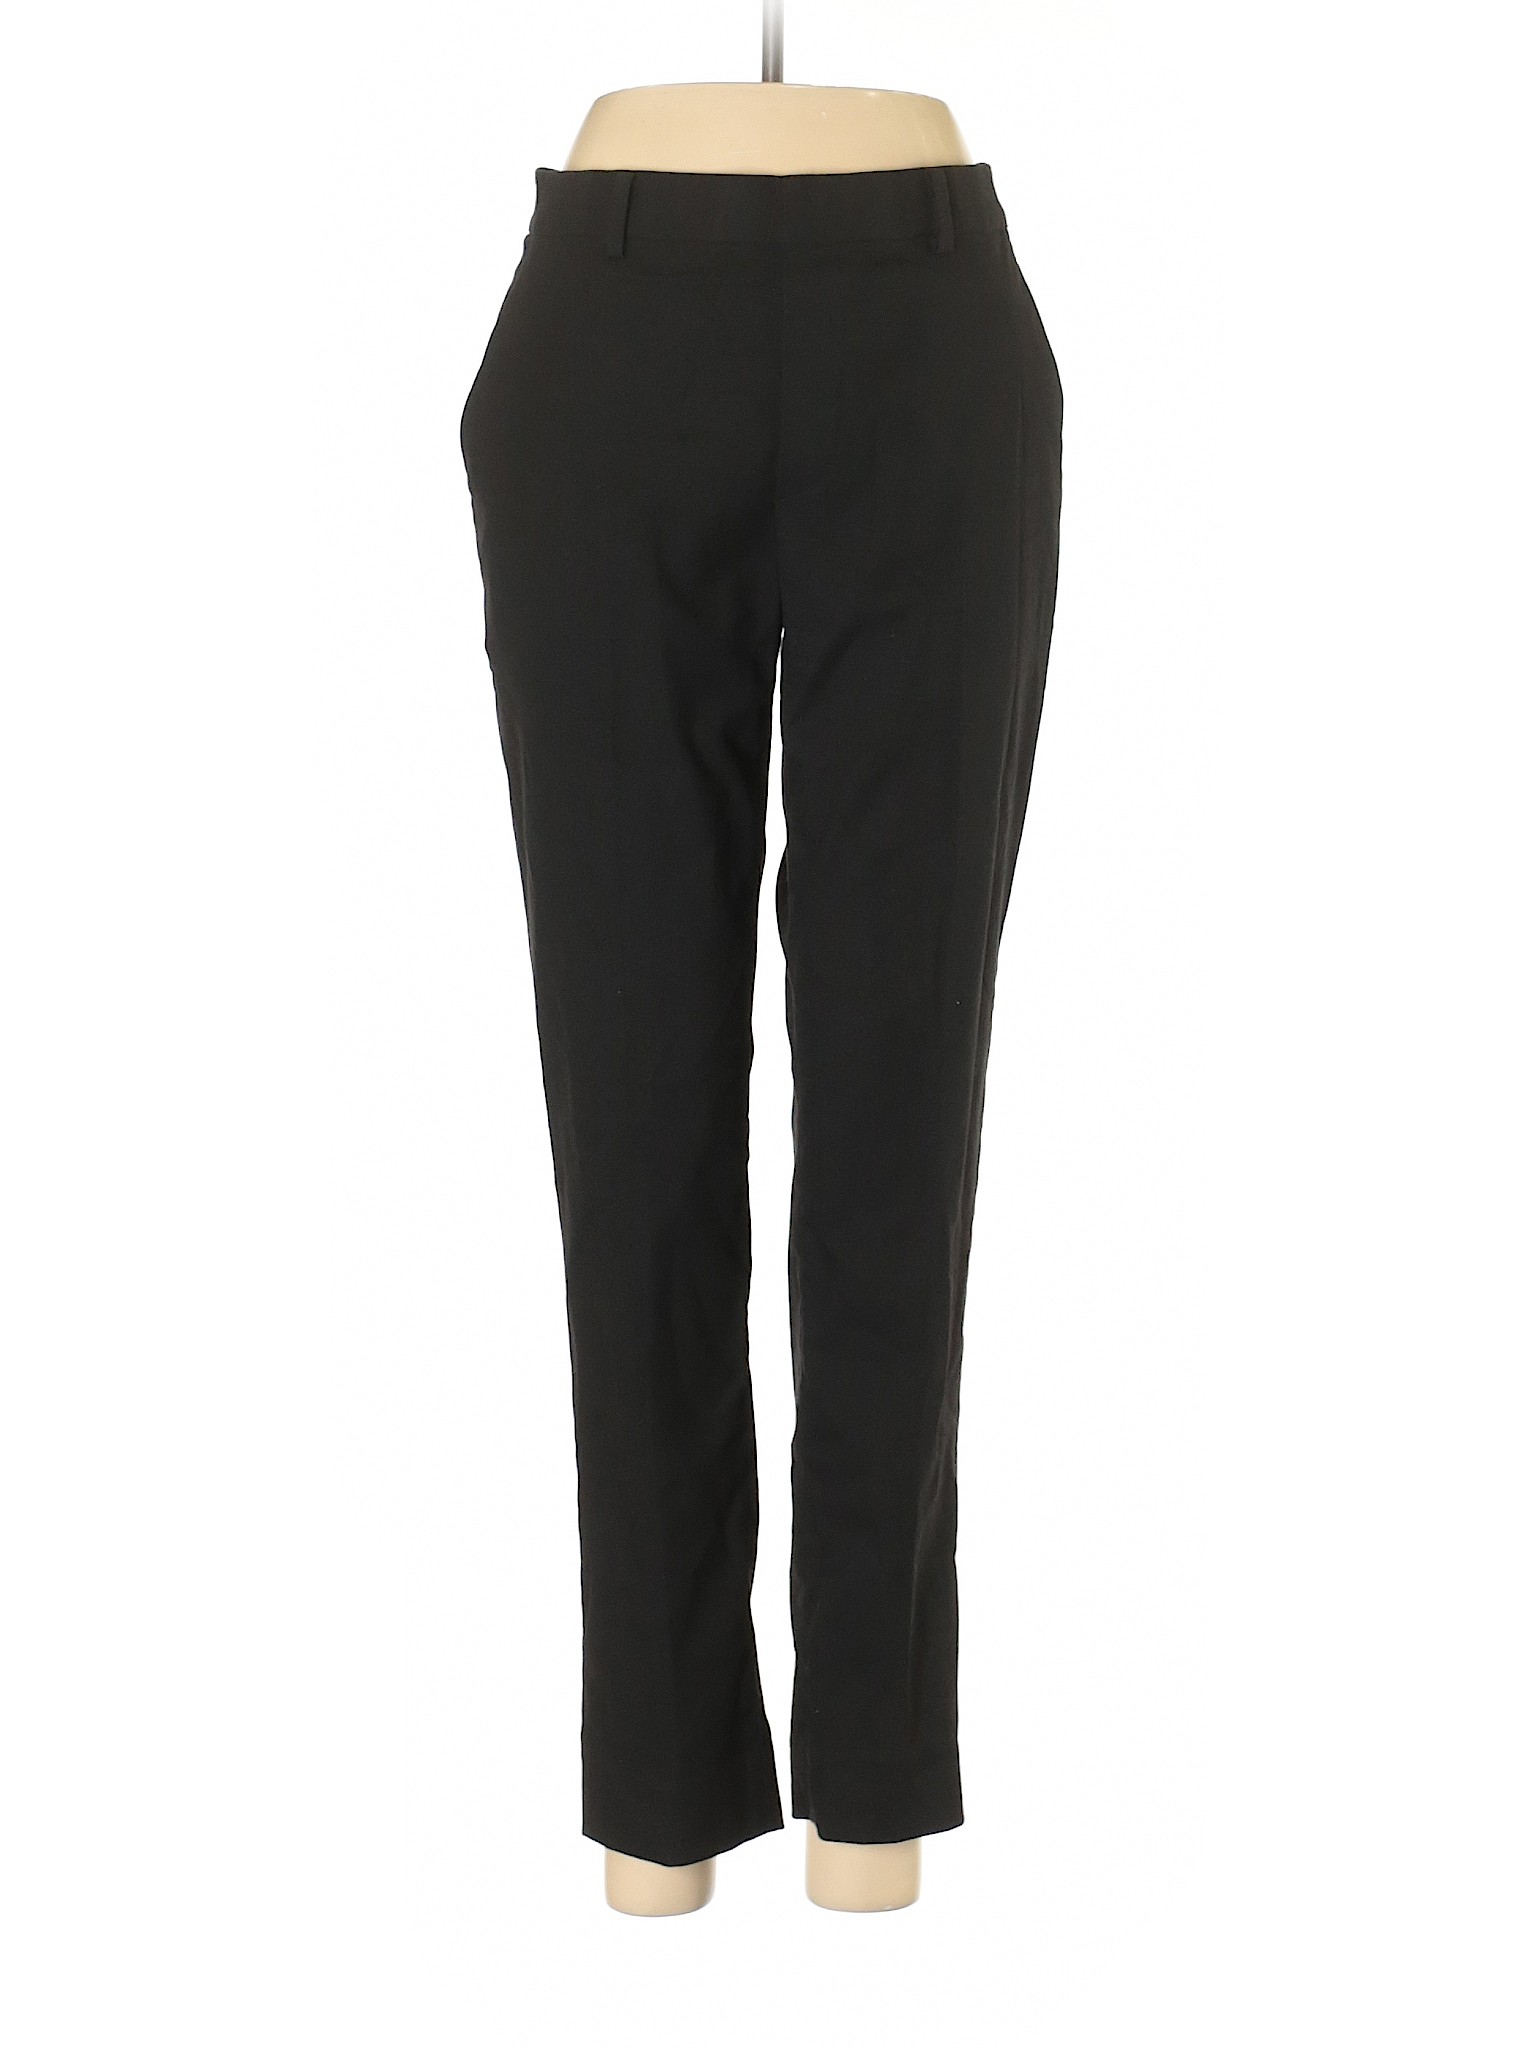 Uniqlo Women Black Dress Pants 26W | eBay